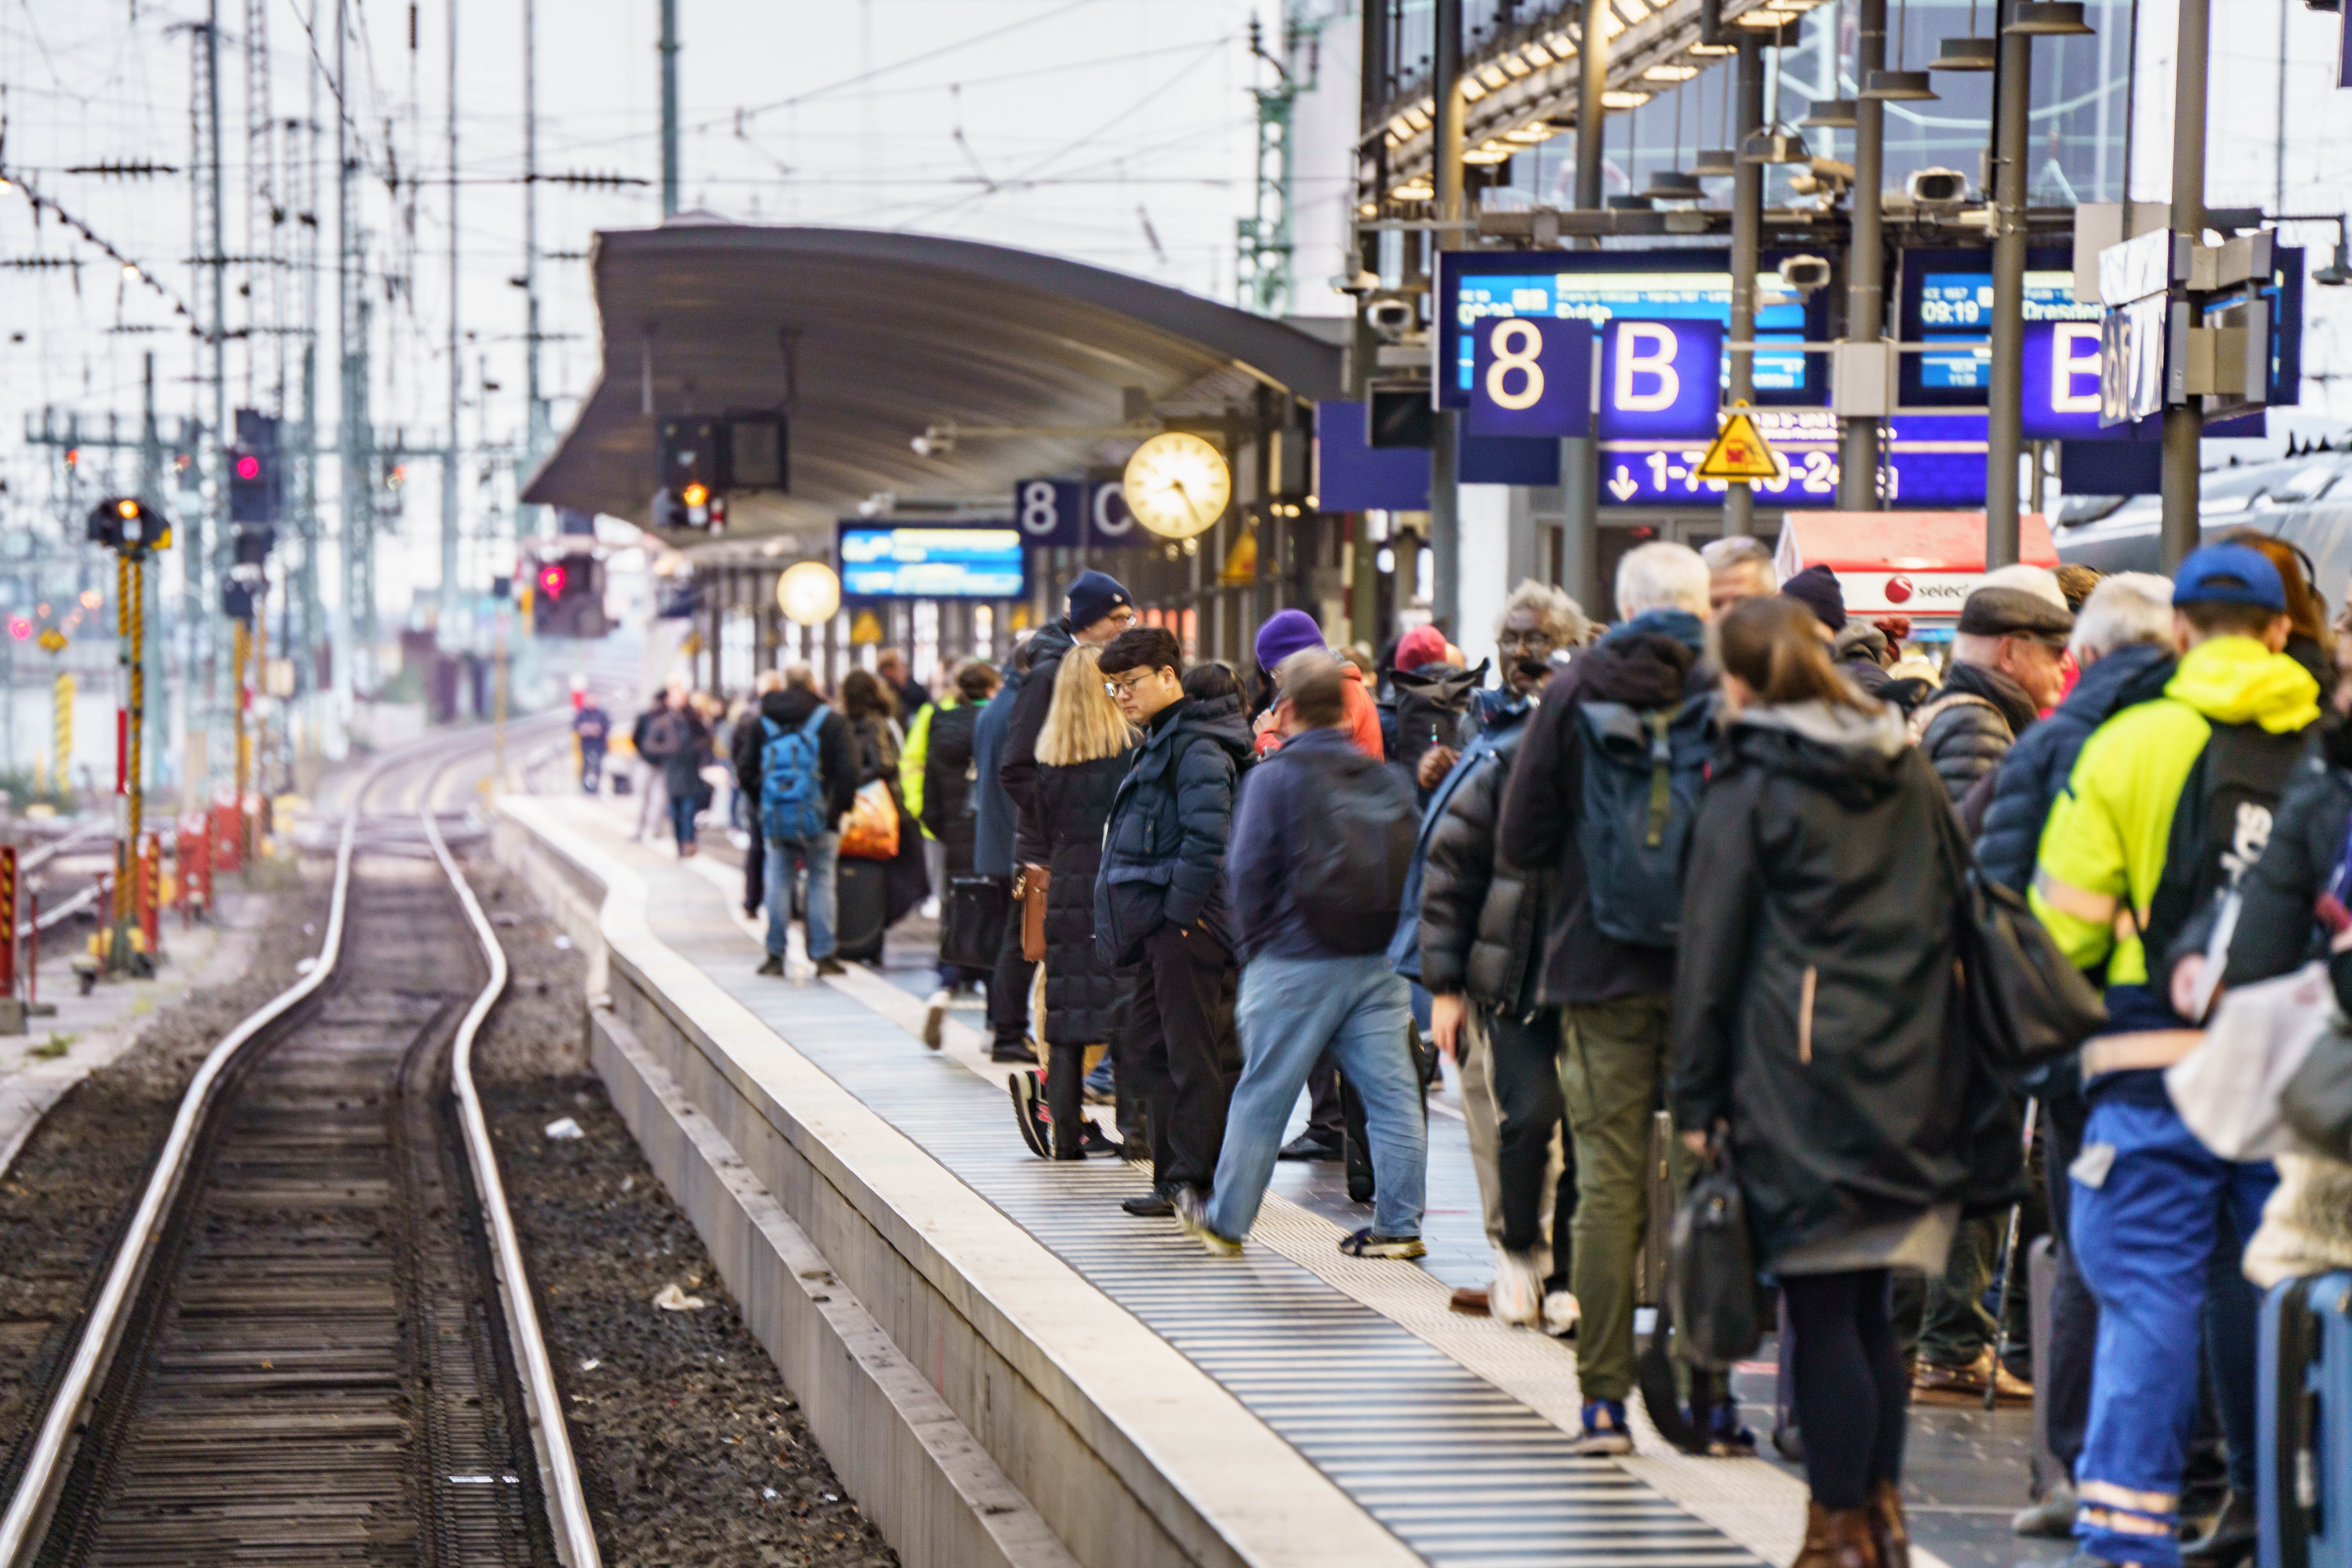 Die Gewerkschaft Verdi will am Freitag mit Warnstreiks den öffentlichen Nahverkehr in zahlreichen Städten in mehreren Bundesländern lahmlegen